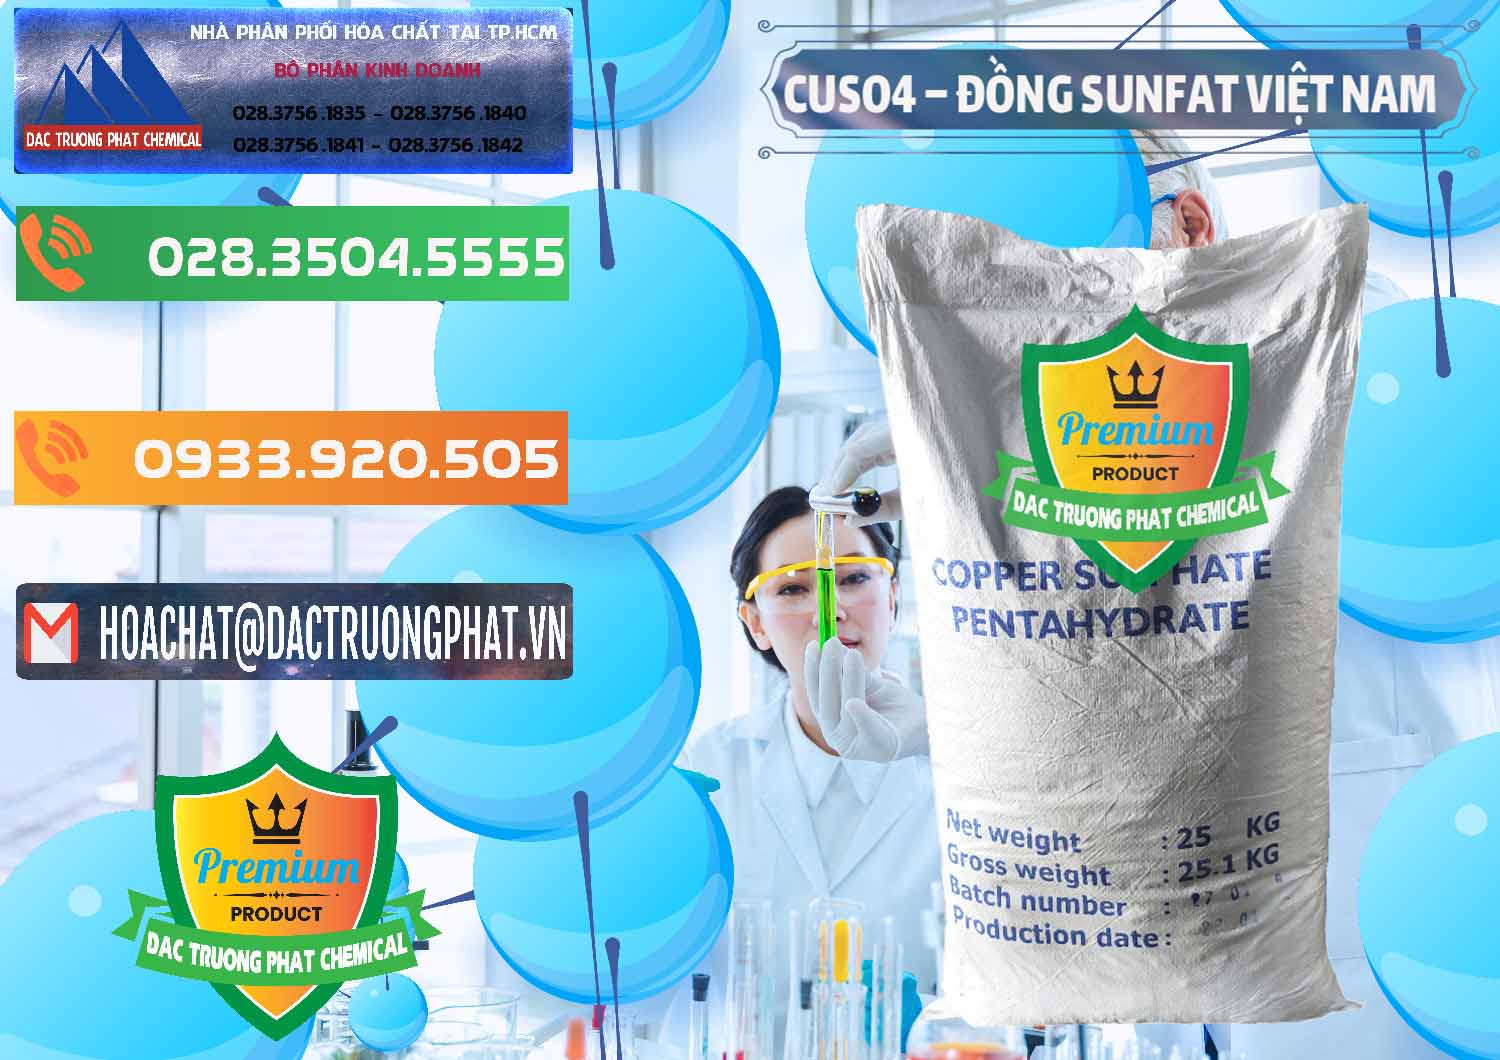 Cty bán - cung cấp CuSO4 – Đồng Sunfat Dạng Bột Việt Nam - 0196 - Công ty phân phối & cung cấp hóa chất tại TP.HCM - hoachatxulynuoc.com.vn